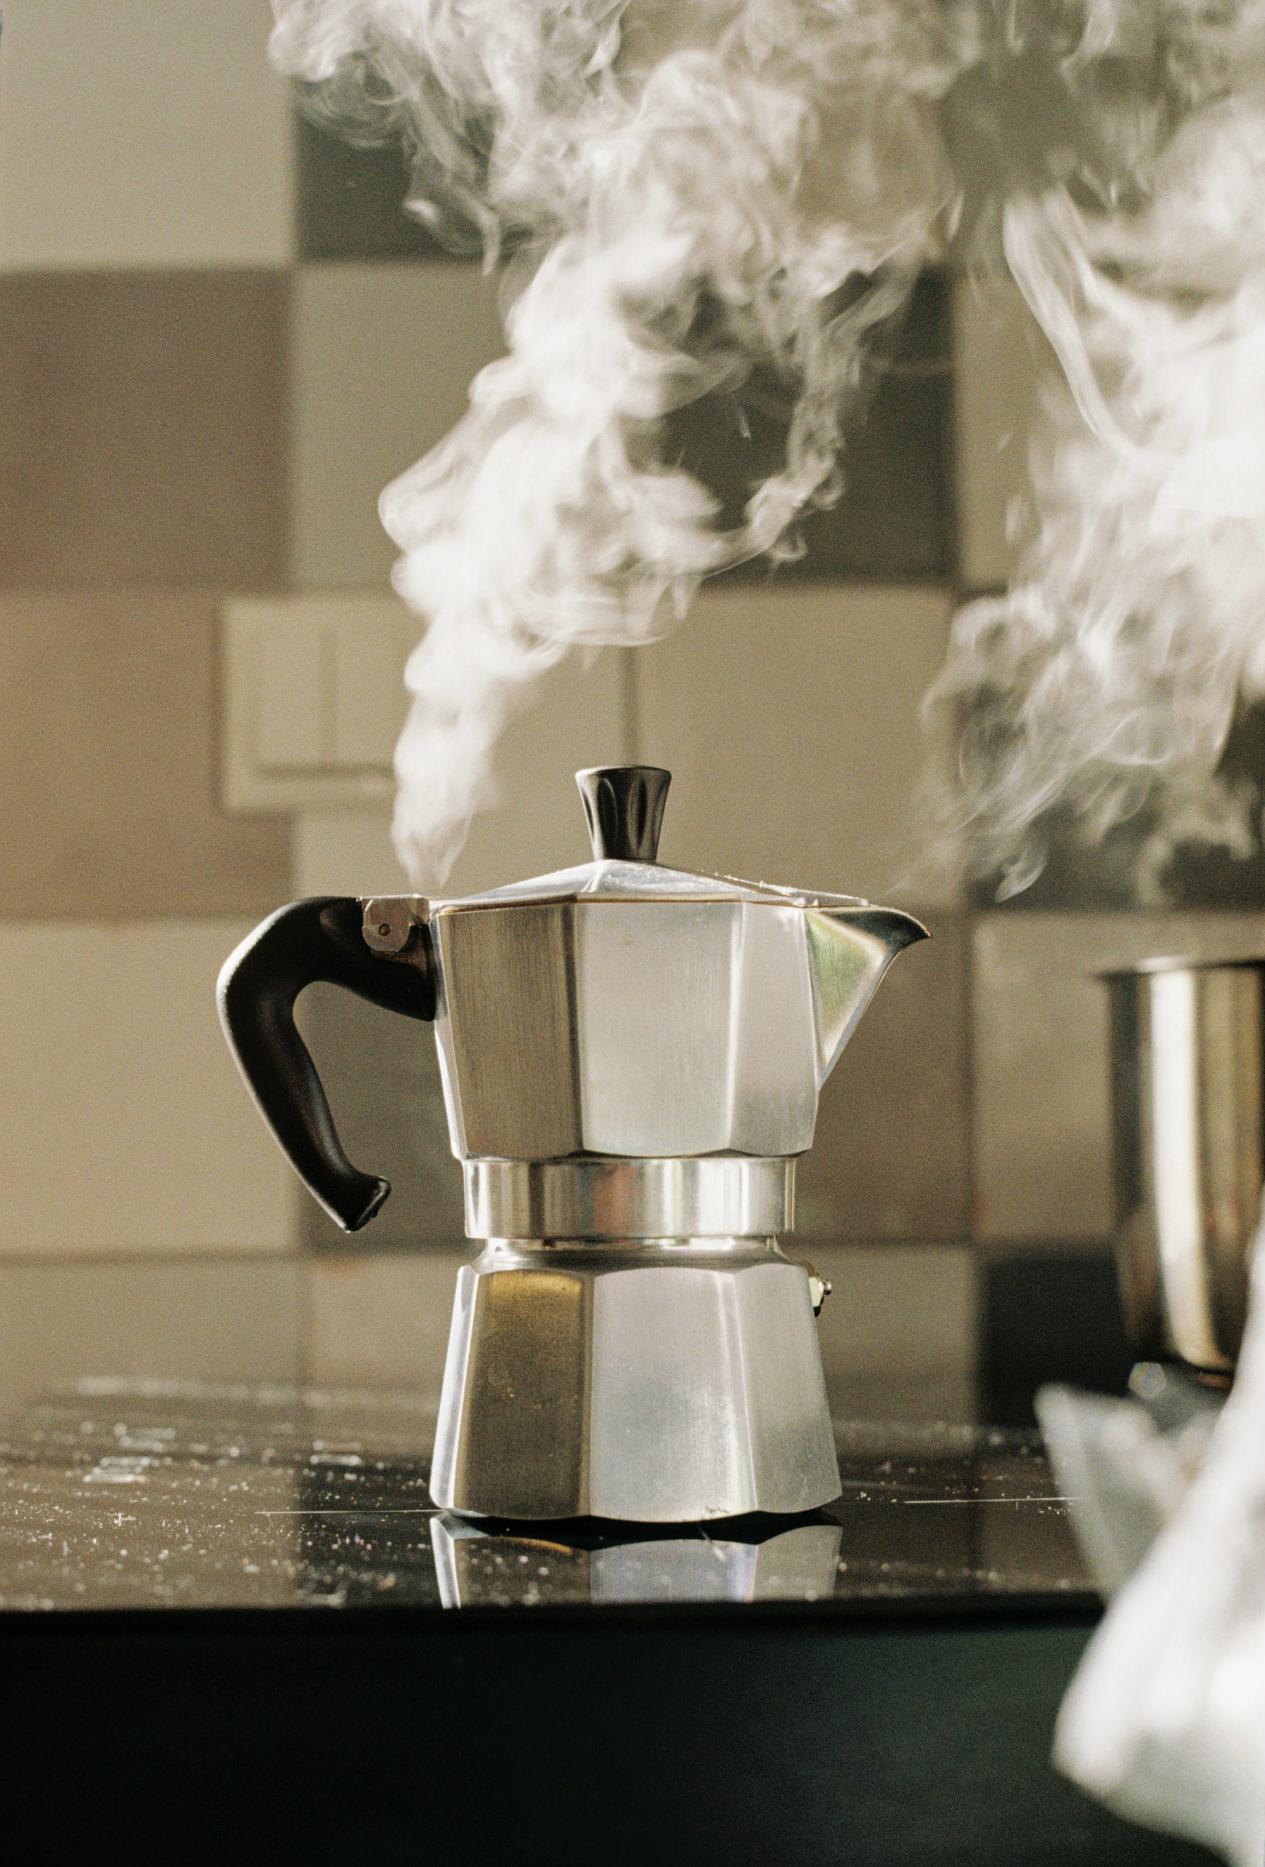 Traditionelles Herdkännchen für die Zubereitung von aromatischem Kaffee auf dem Herd - genieße den klassischen Kaffeegeschmack in unserer Kaffeerösterei